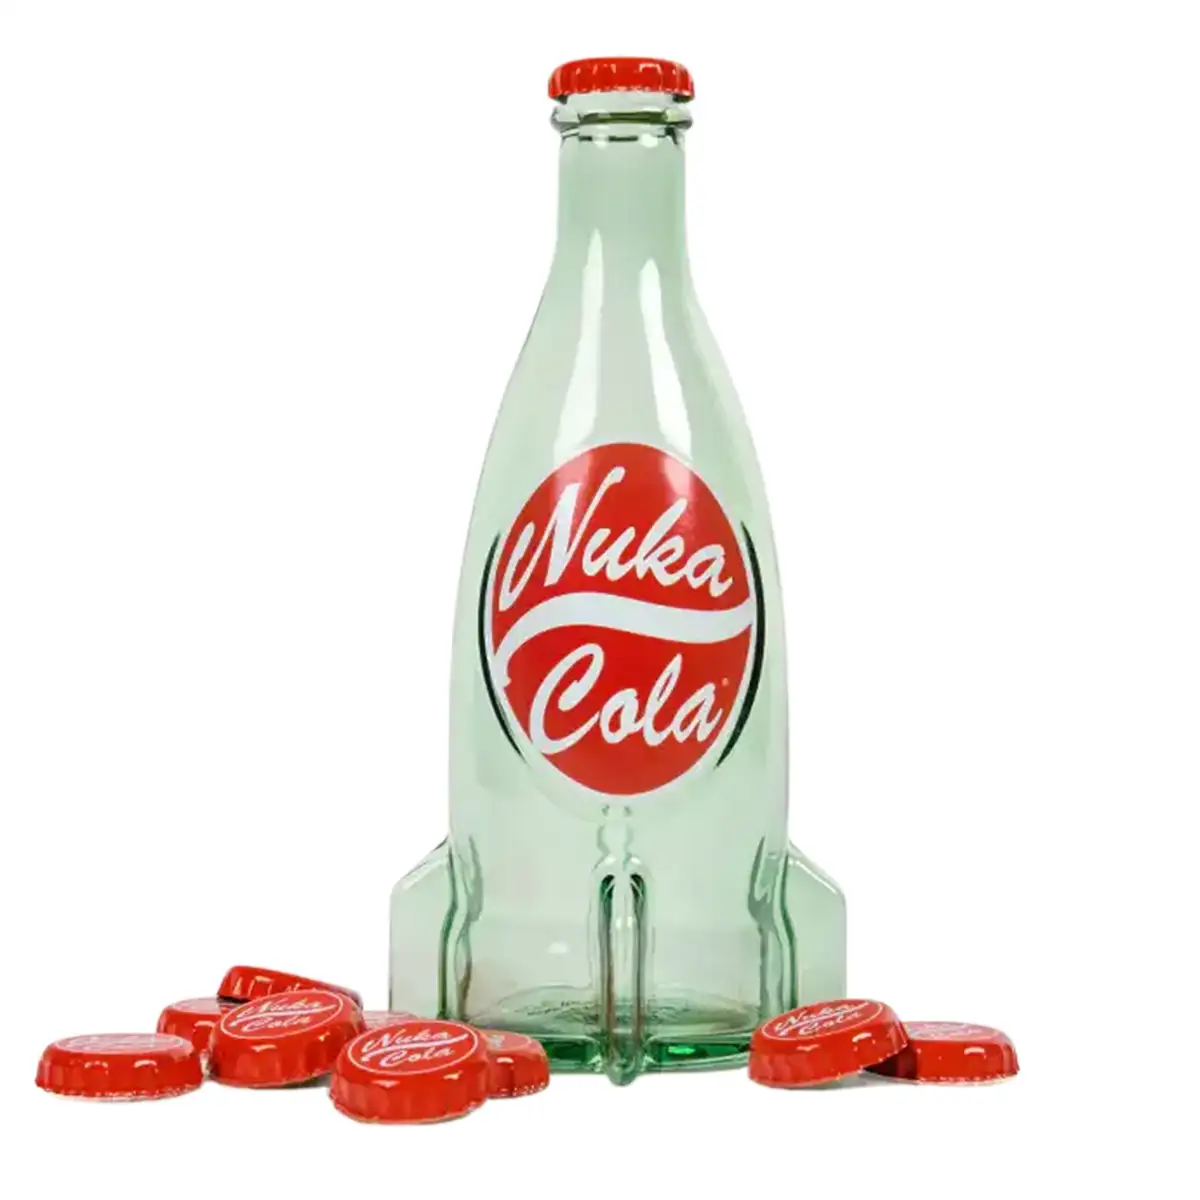 Fallout "Nuka Cola" Glasflasche und Kronkorken